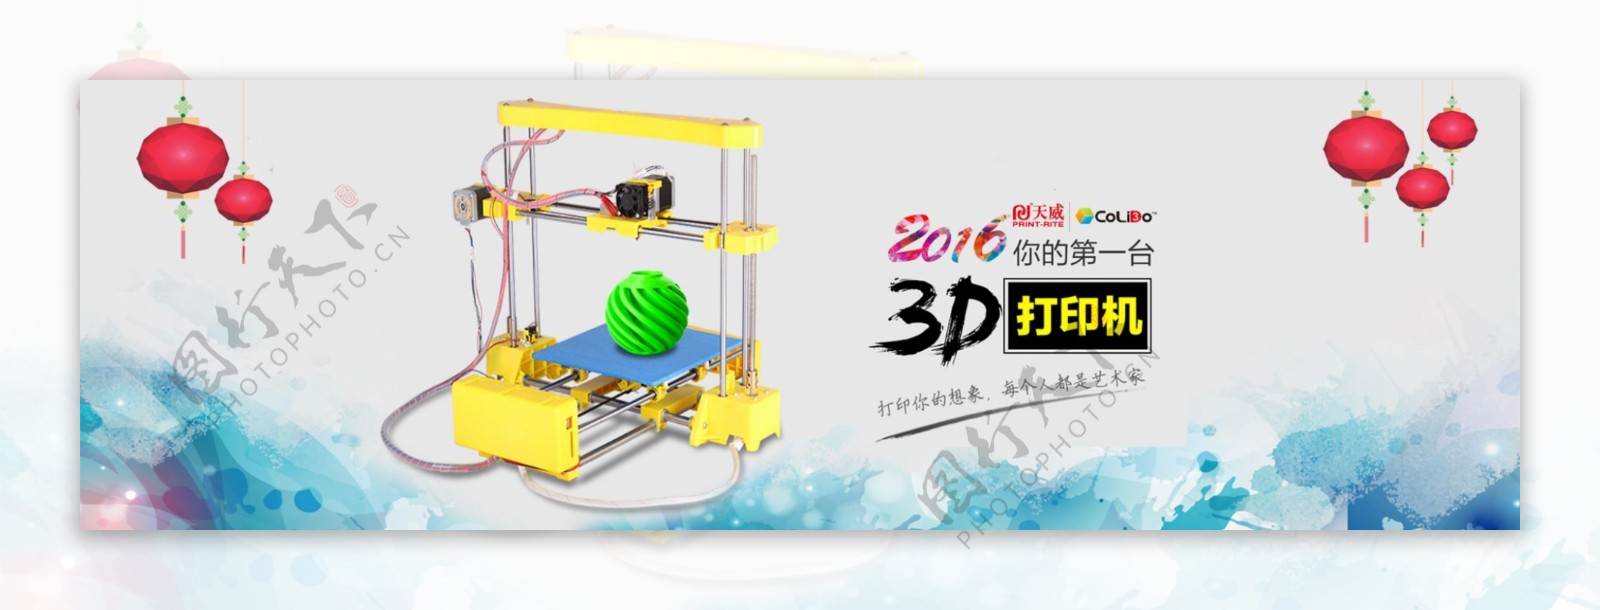 3D打印机淘宝新年海报